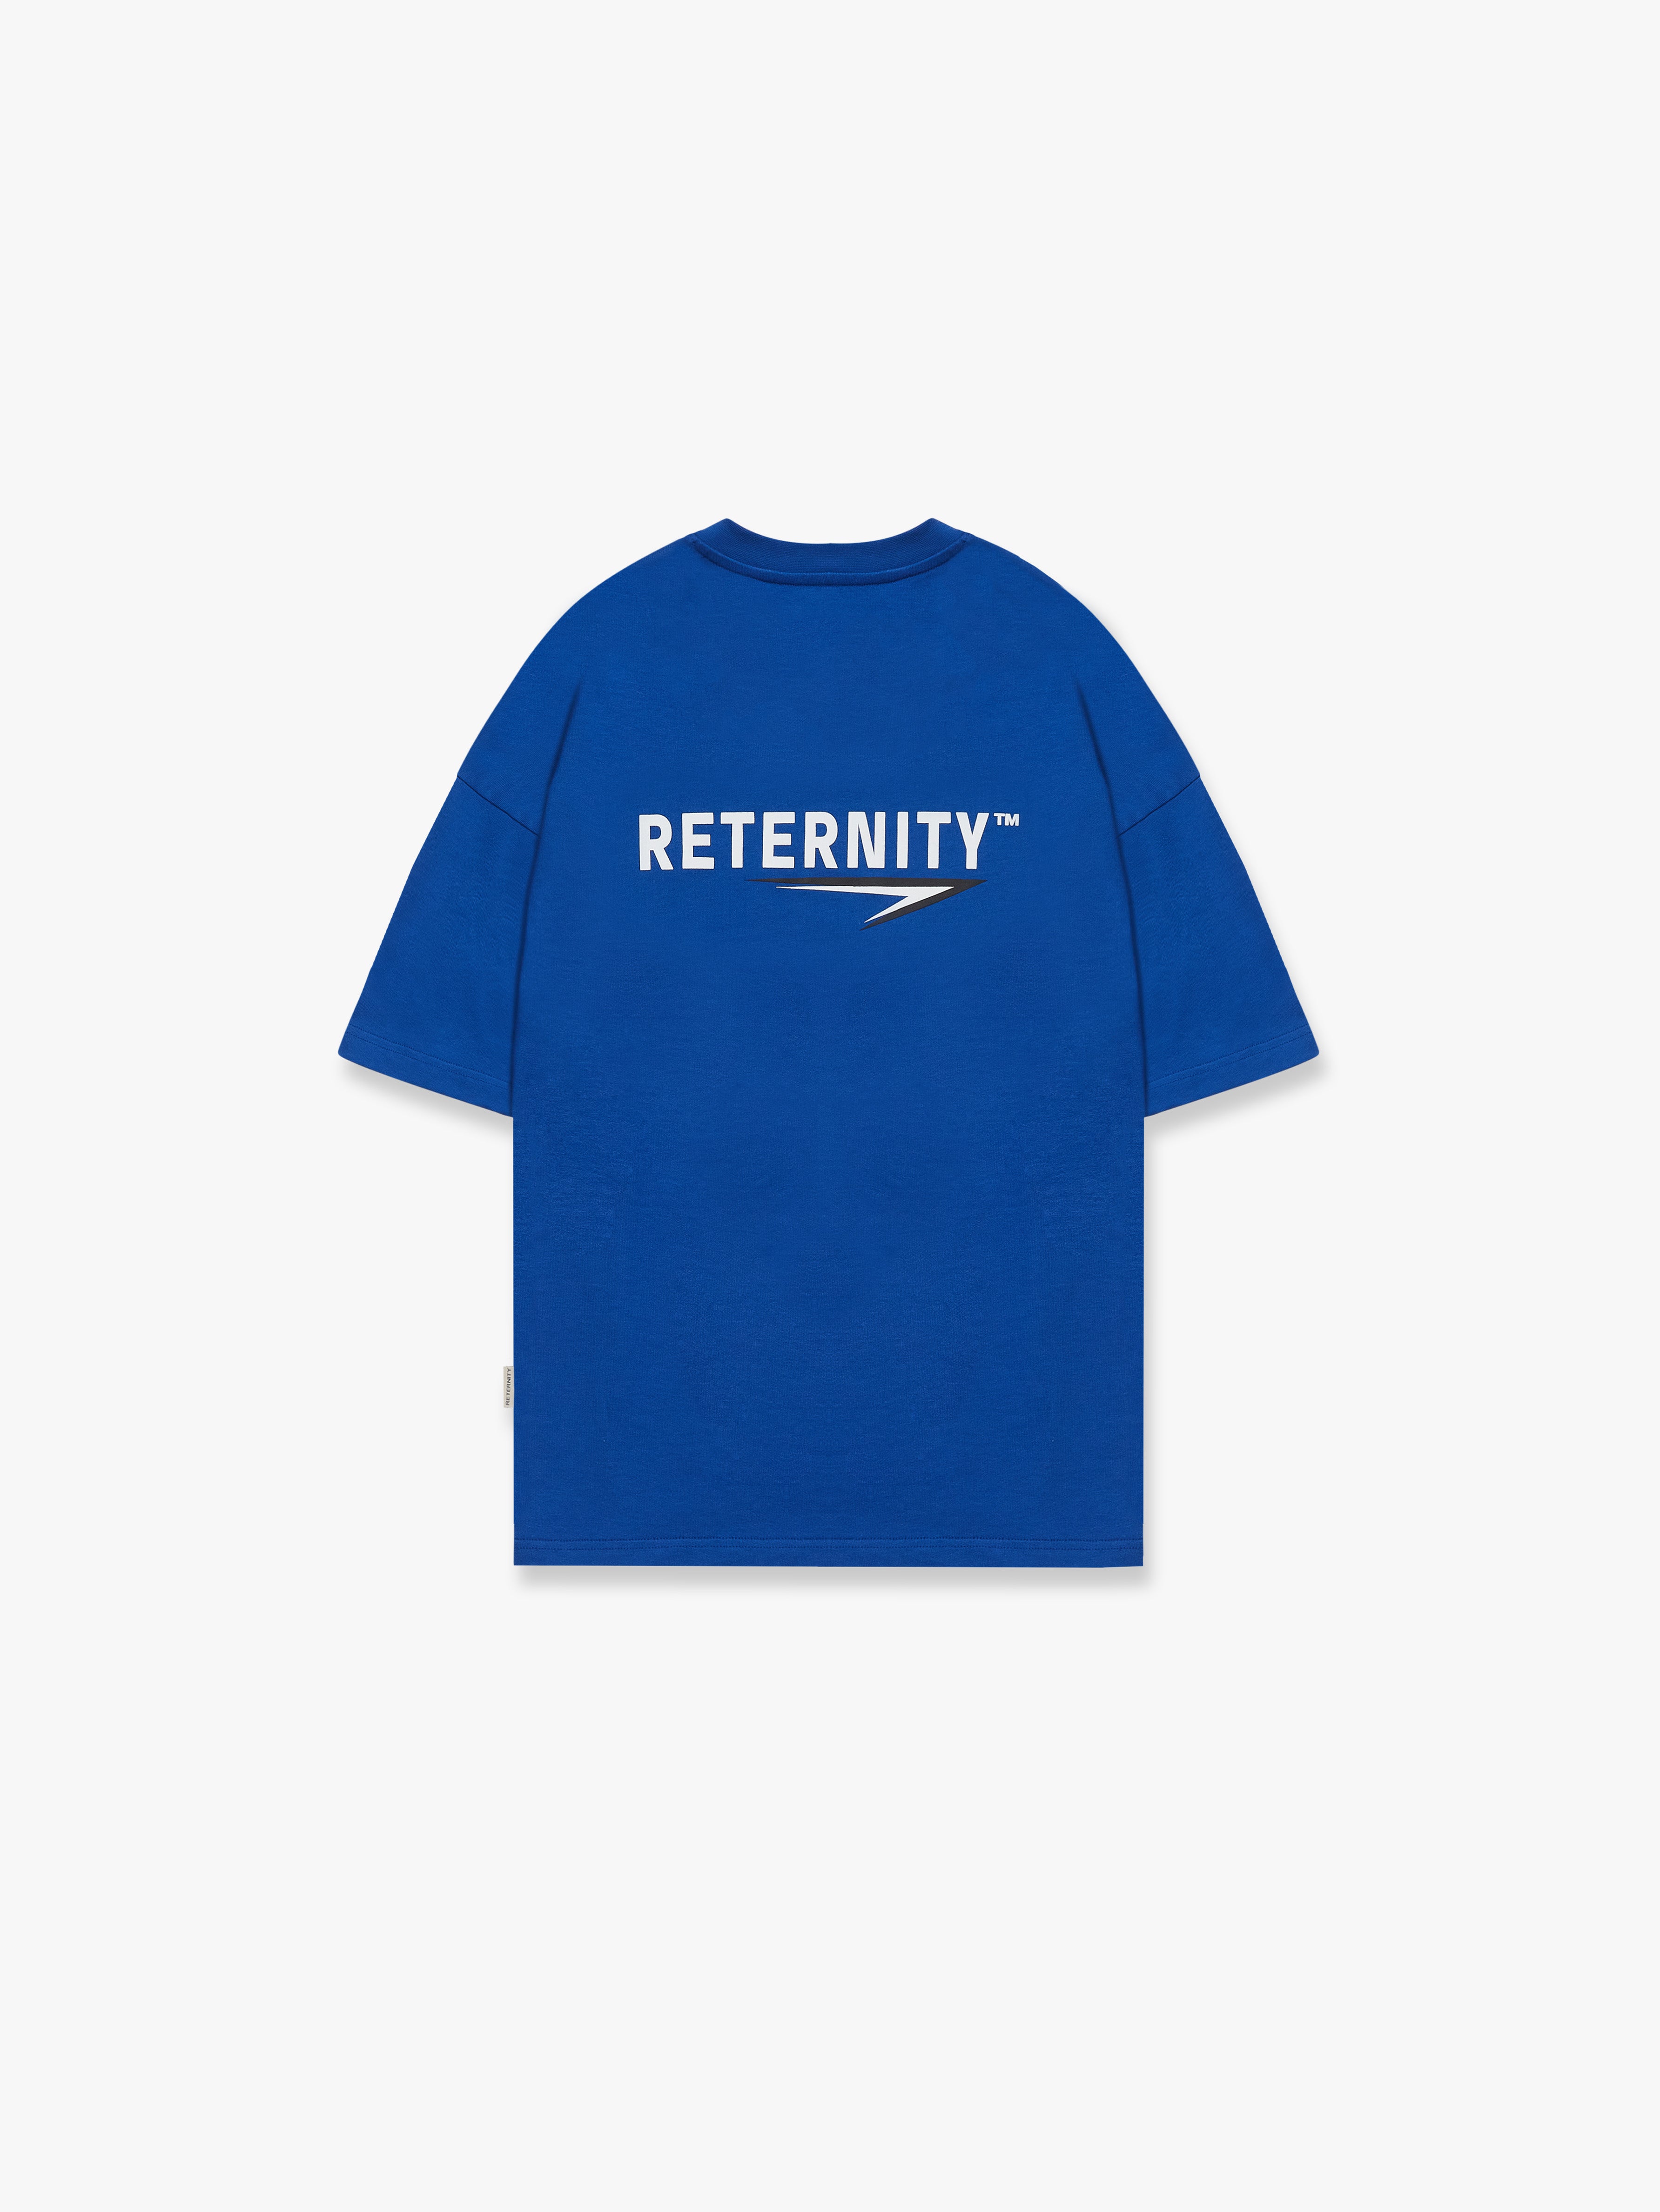 T-SHIRT RETERNITY TM - BLUE